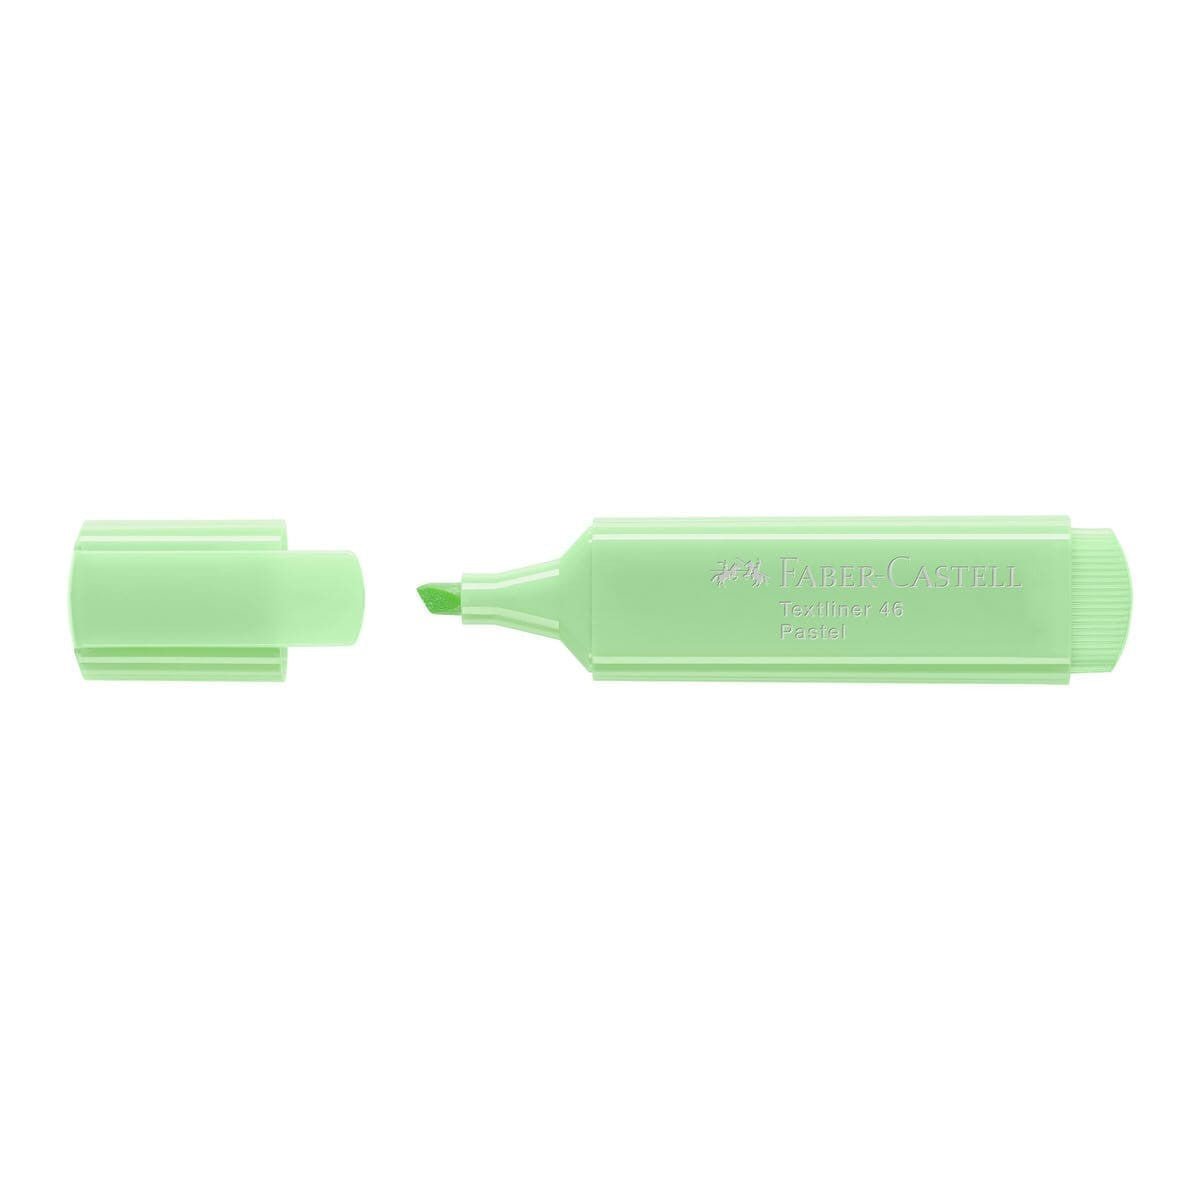 Highlighter Pastel Överstrykningspenna - Light green - Faber-Castell - Tidformera